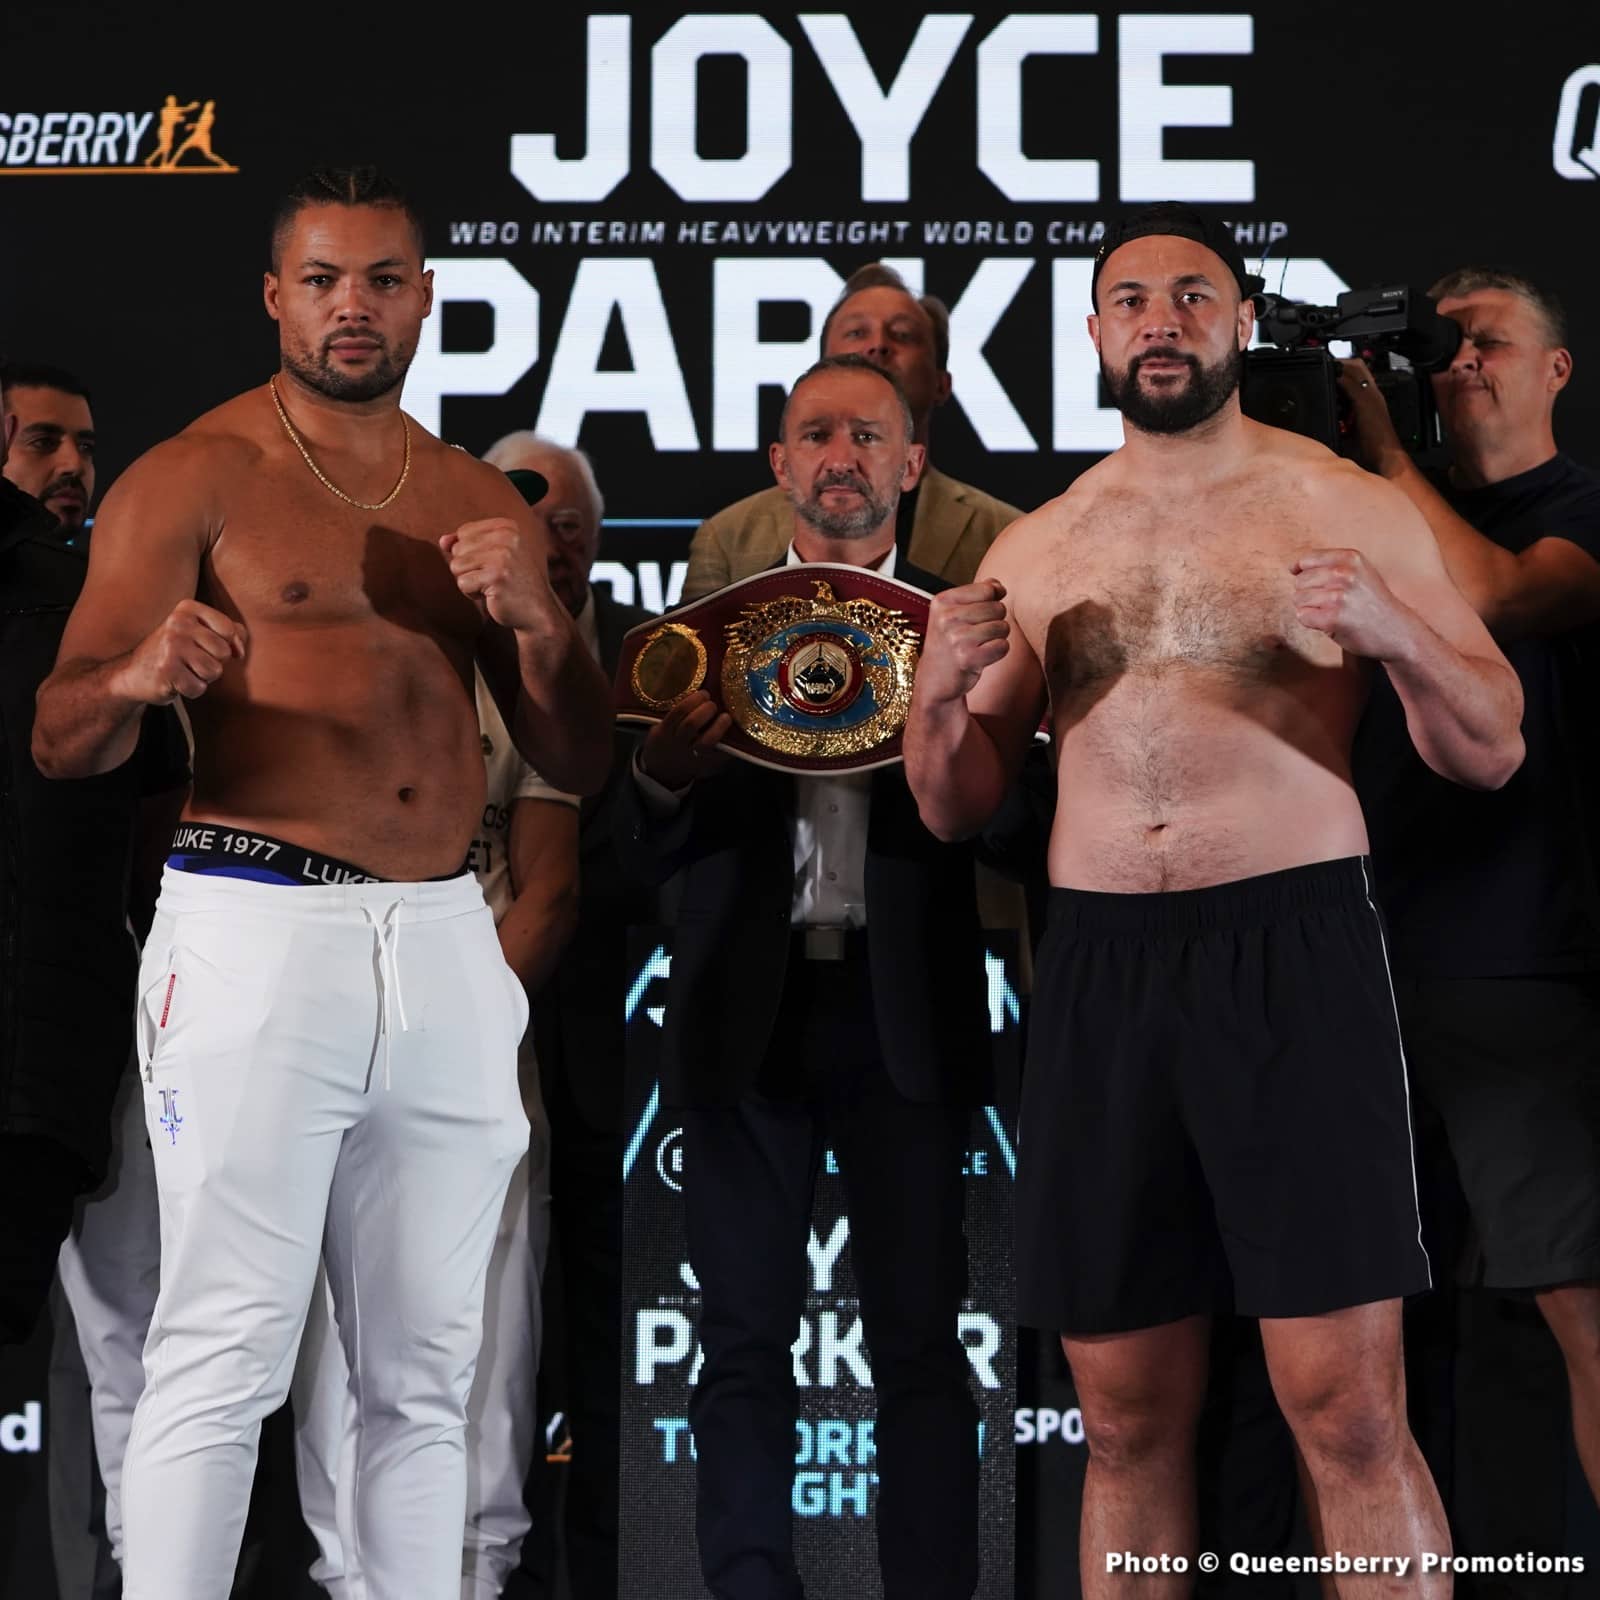 Image: Joe Joyce 271.4 vs. Joseph Parker 255.25 - weigh-in results